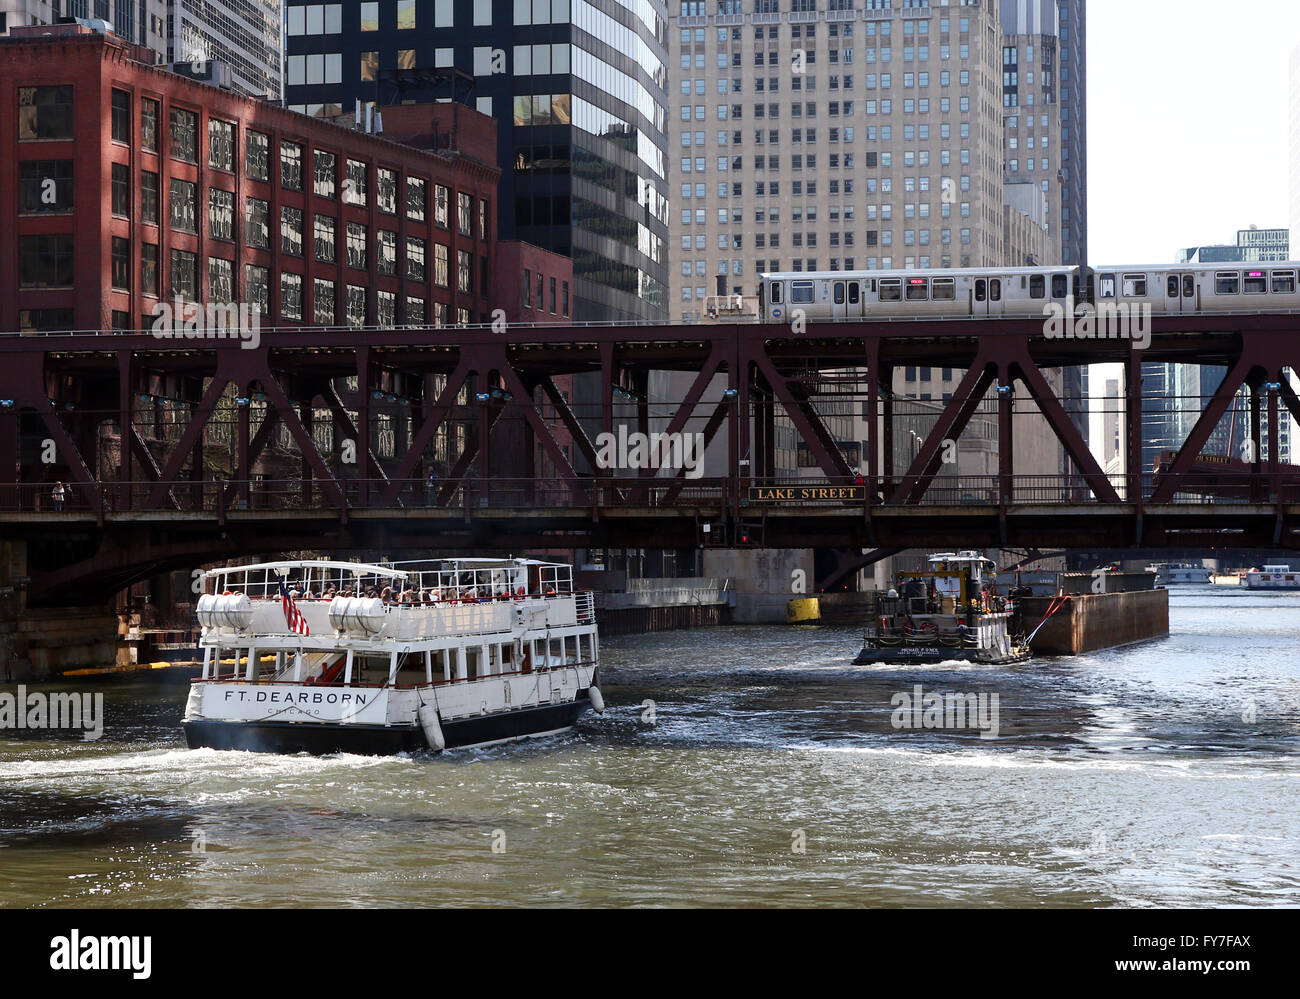 Ein Kreuzfahrtschiff Architektur und Kahn auf dem Chicago River unter einem erhöhten CTA trainieren an der Lake Street Bridge in Chicago Stockfoto